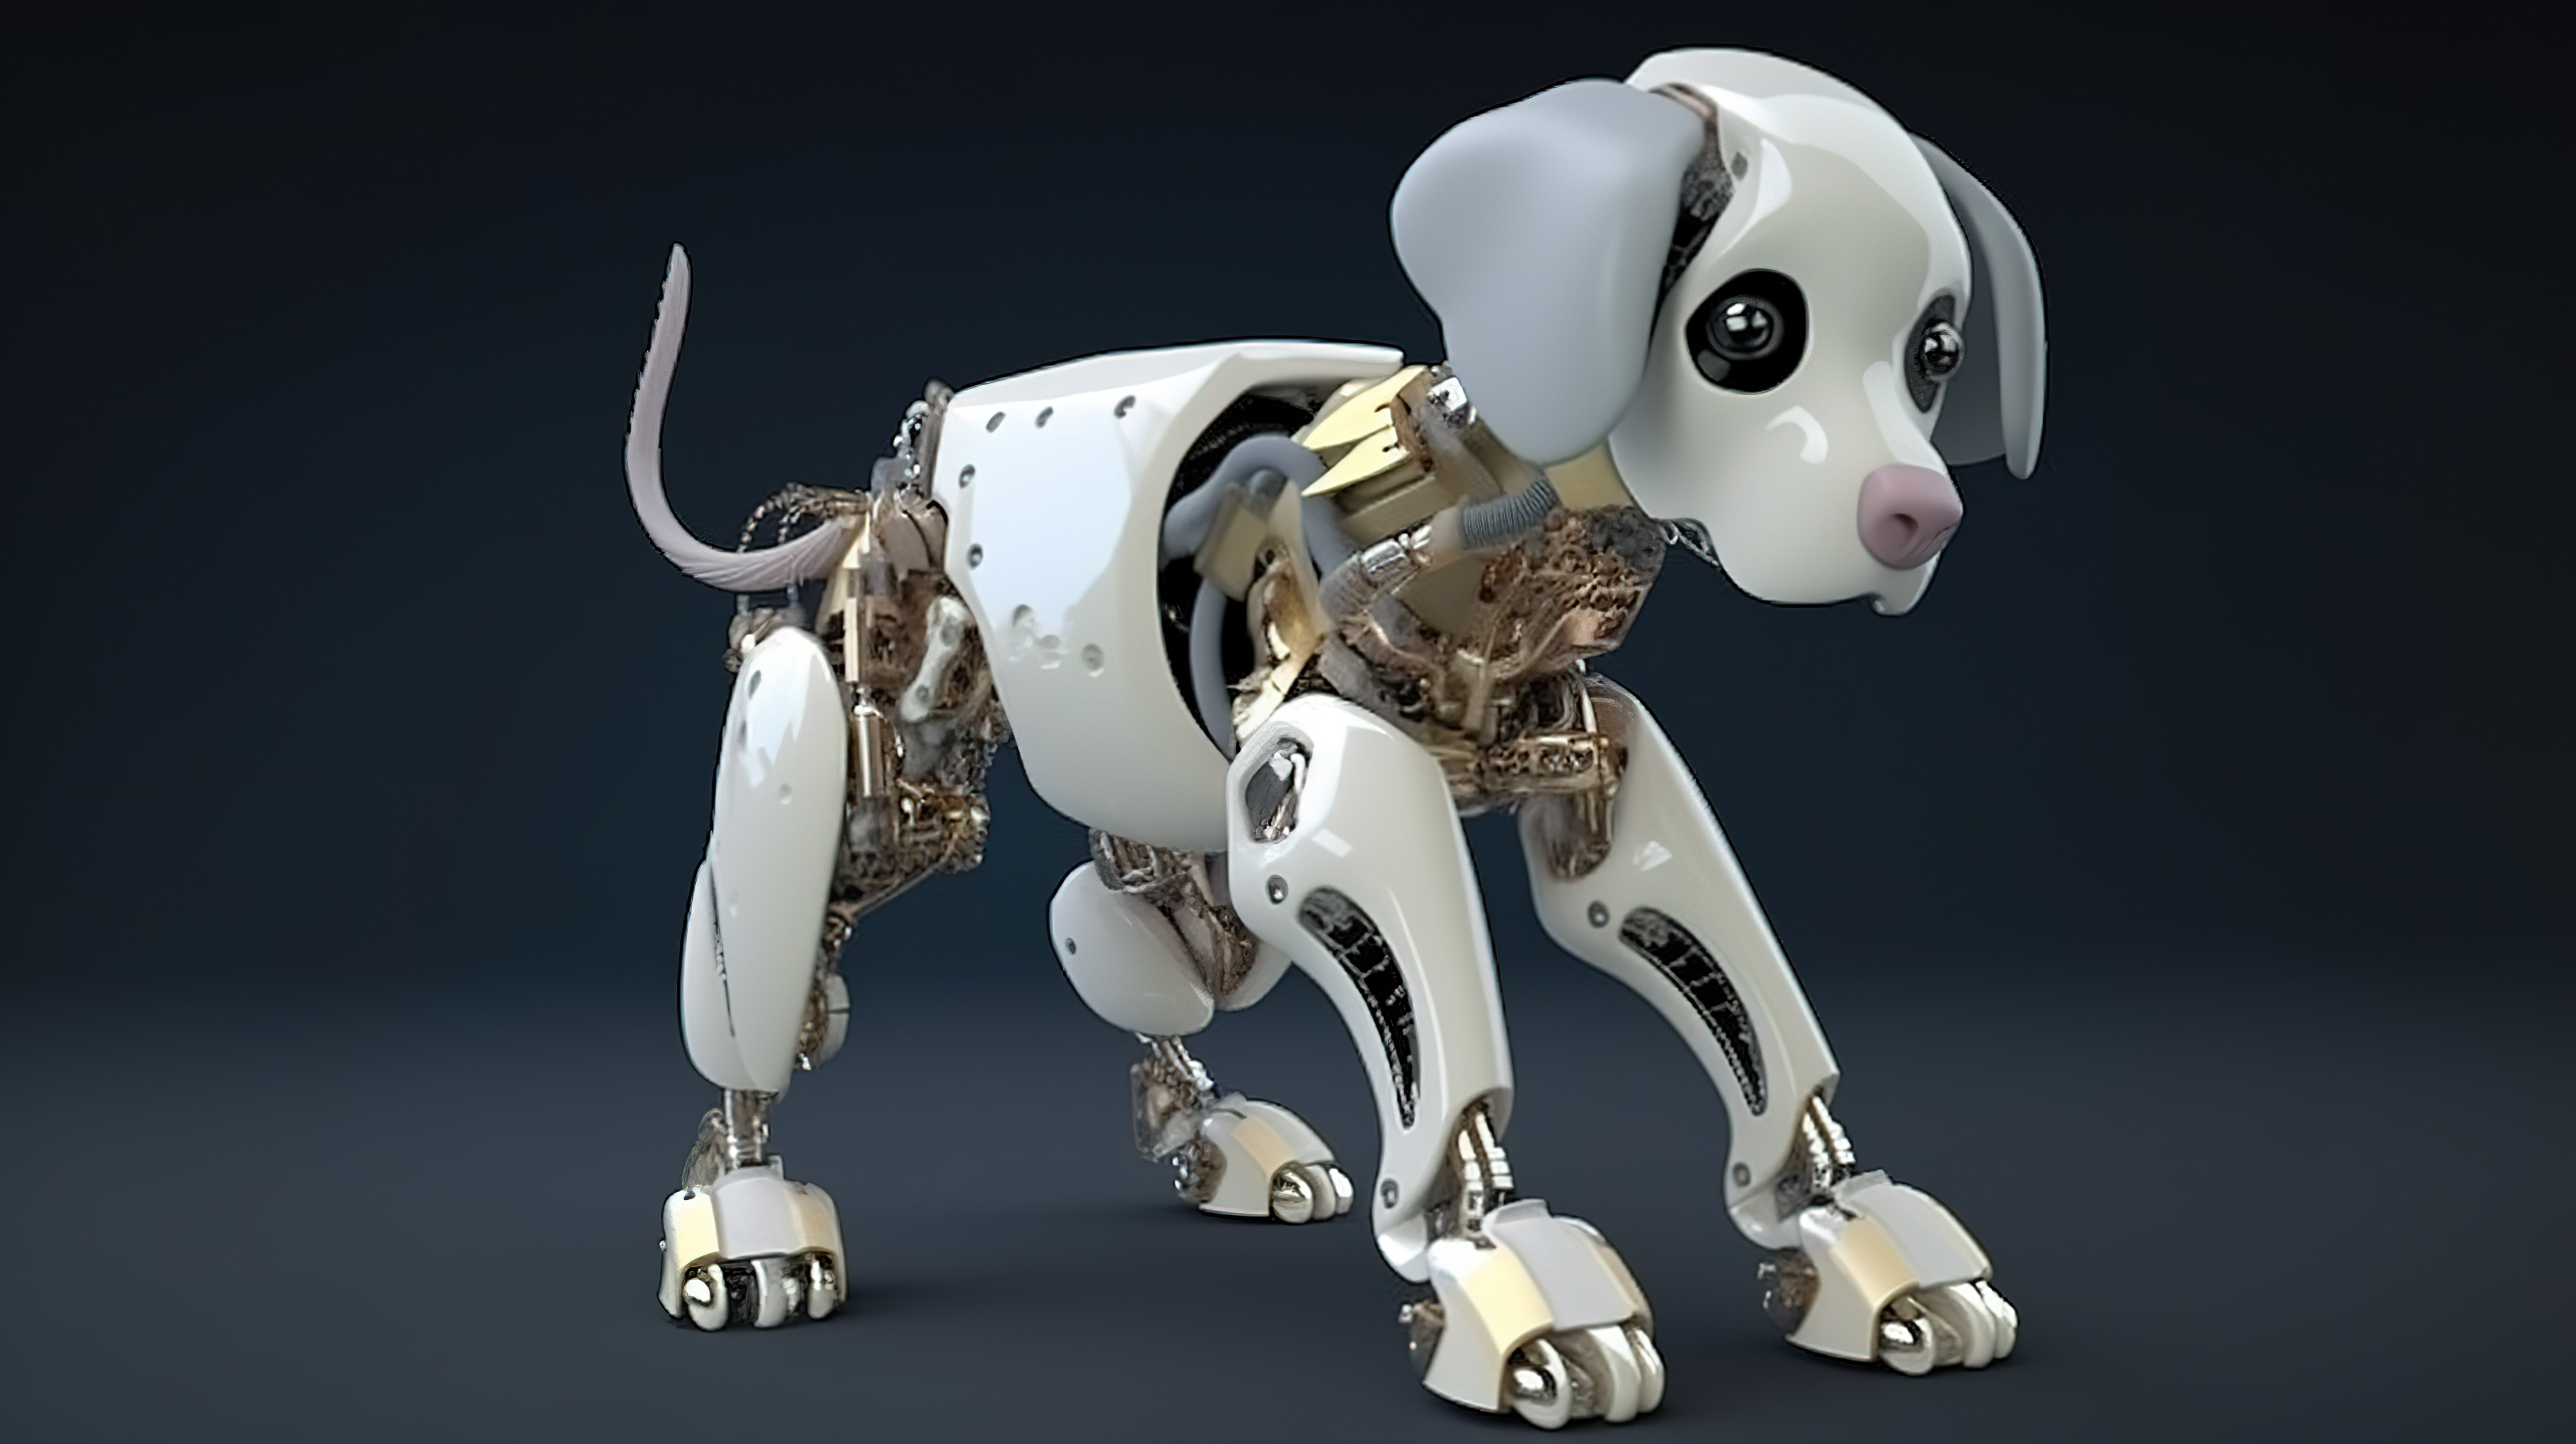 狗机器人与 3D 渲染的人工智能机器人一起亮相图片